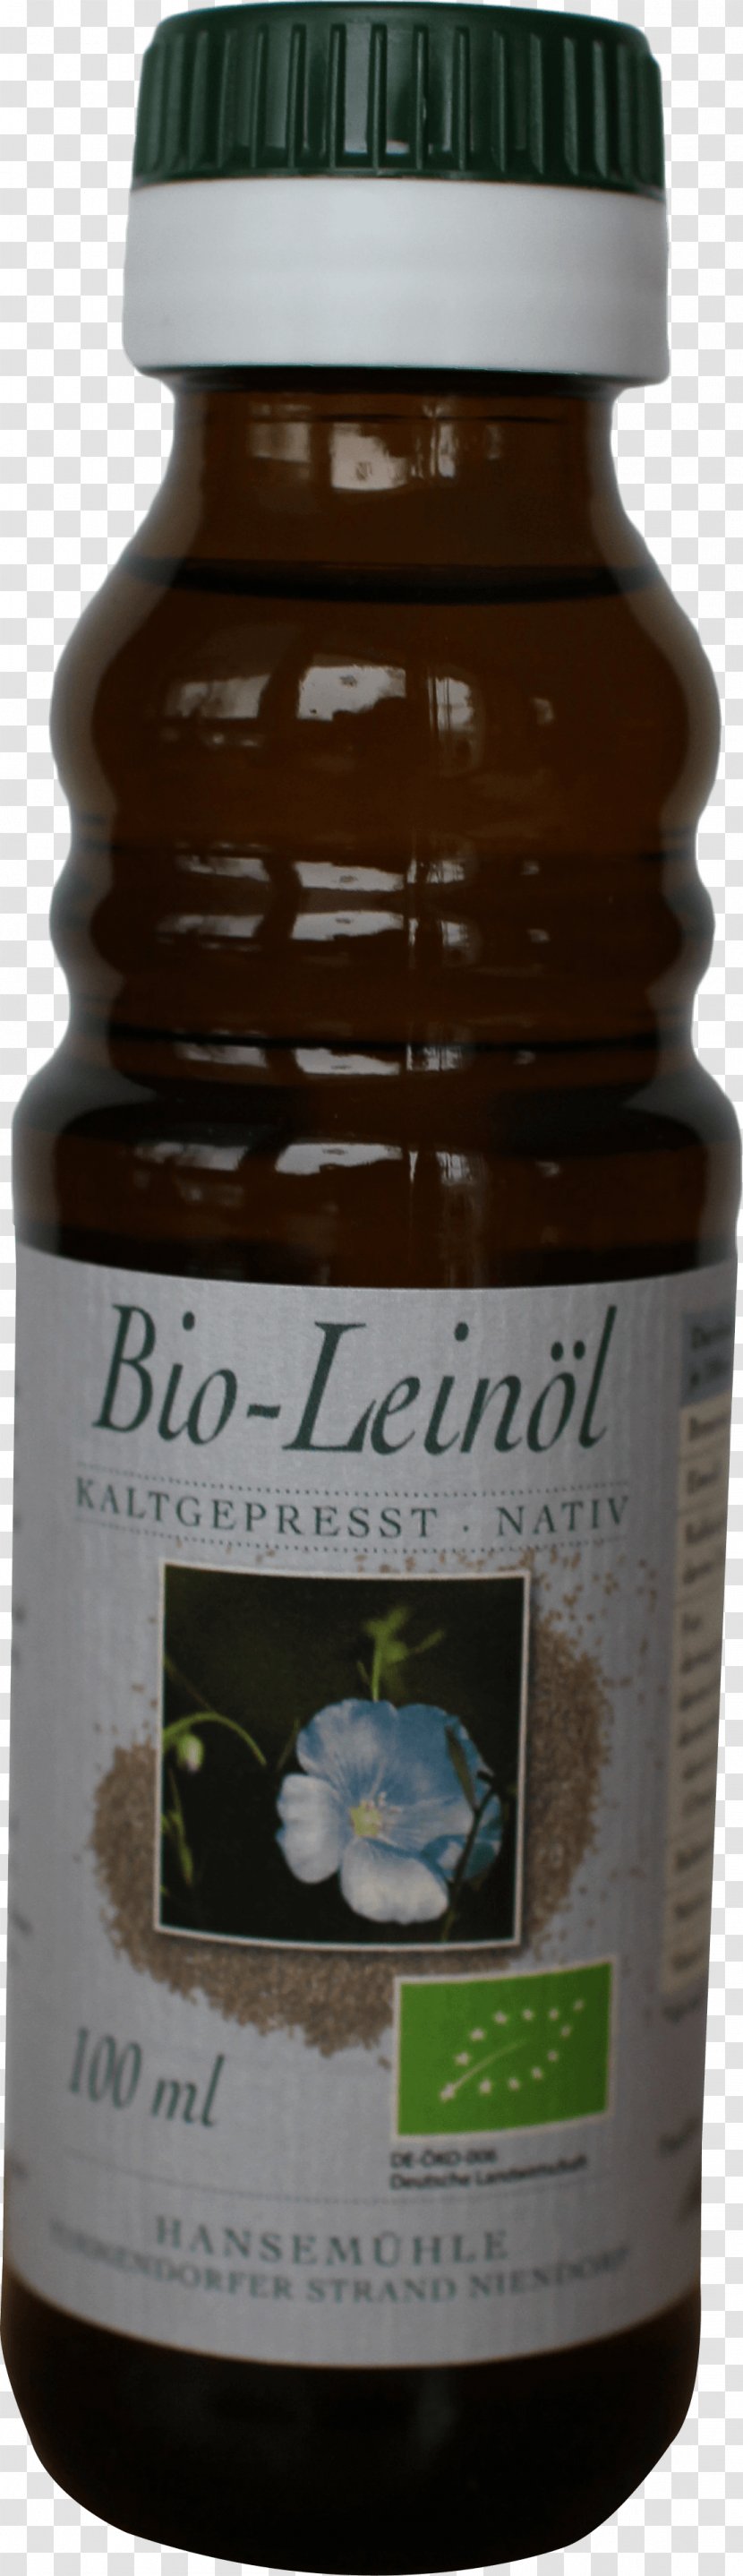 Linseed Oil Omega-3 Fatty Acid Organic Food Flax Kaltpressung - Alnatura - Dmdrogerie Markt Transparent PNG